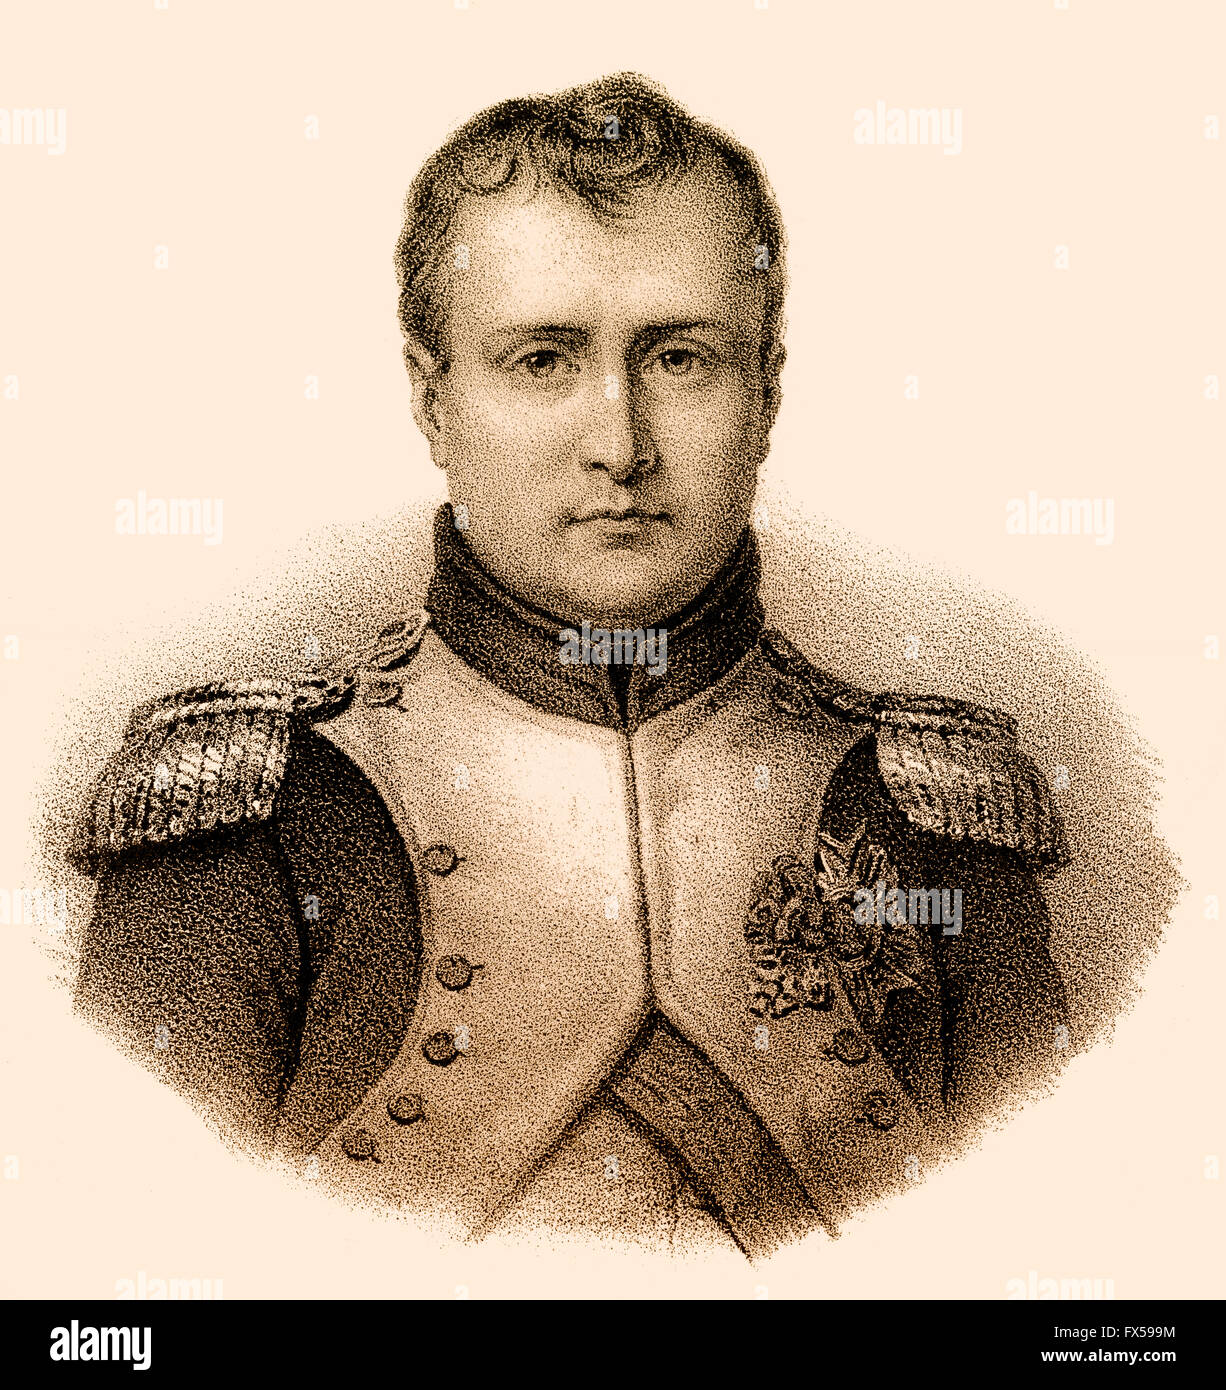 Napoléon Bonaparte, 1769-1821, Imperatore dei Francesi di Napoleone I Foto Stock